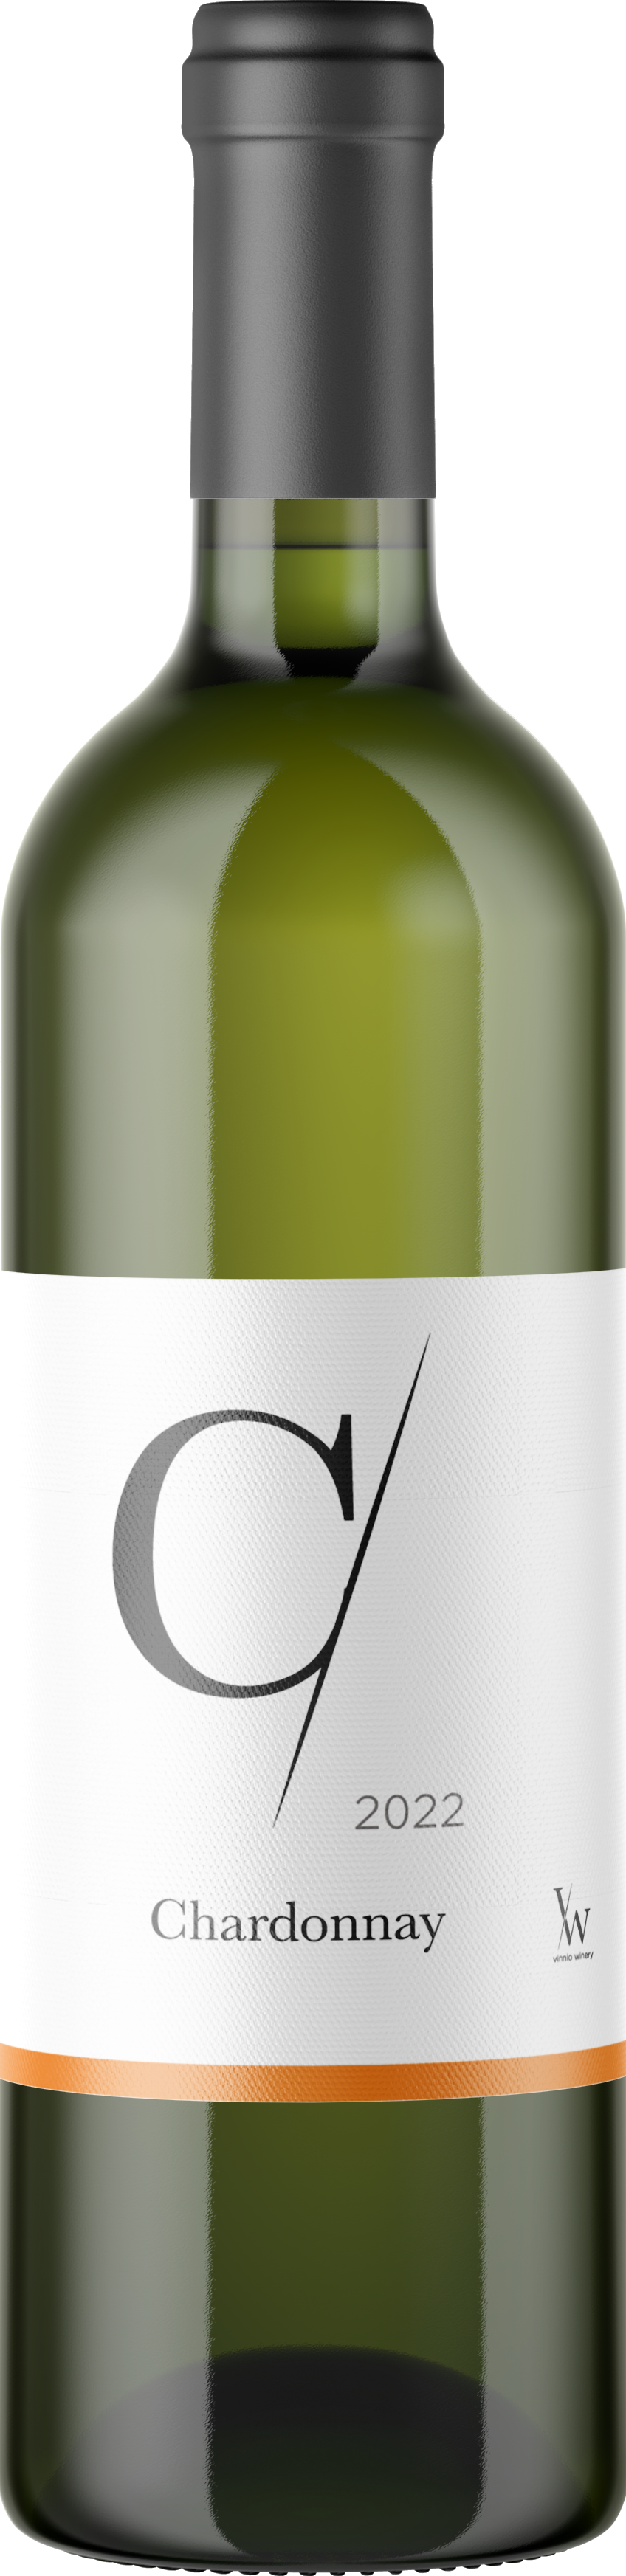 Vinnio Winery - Chardonnay 2022